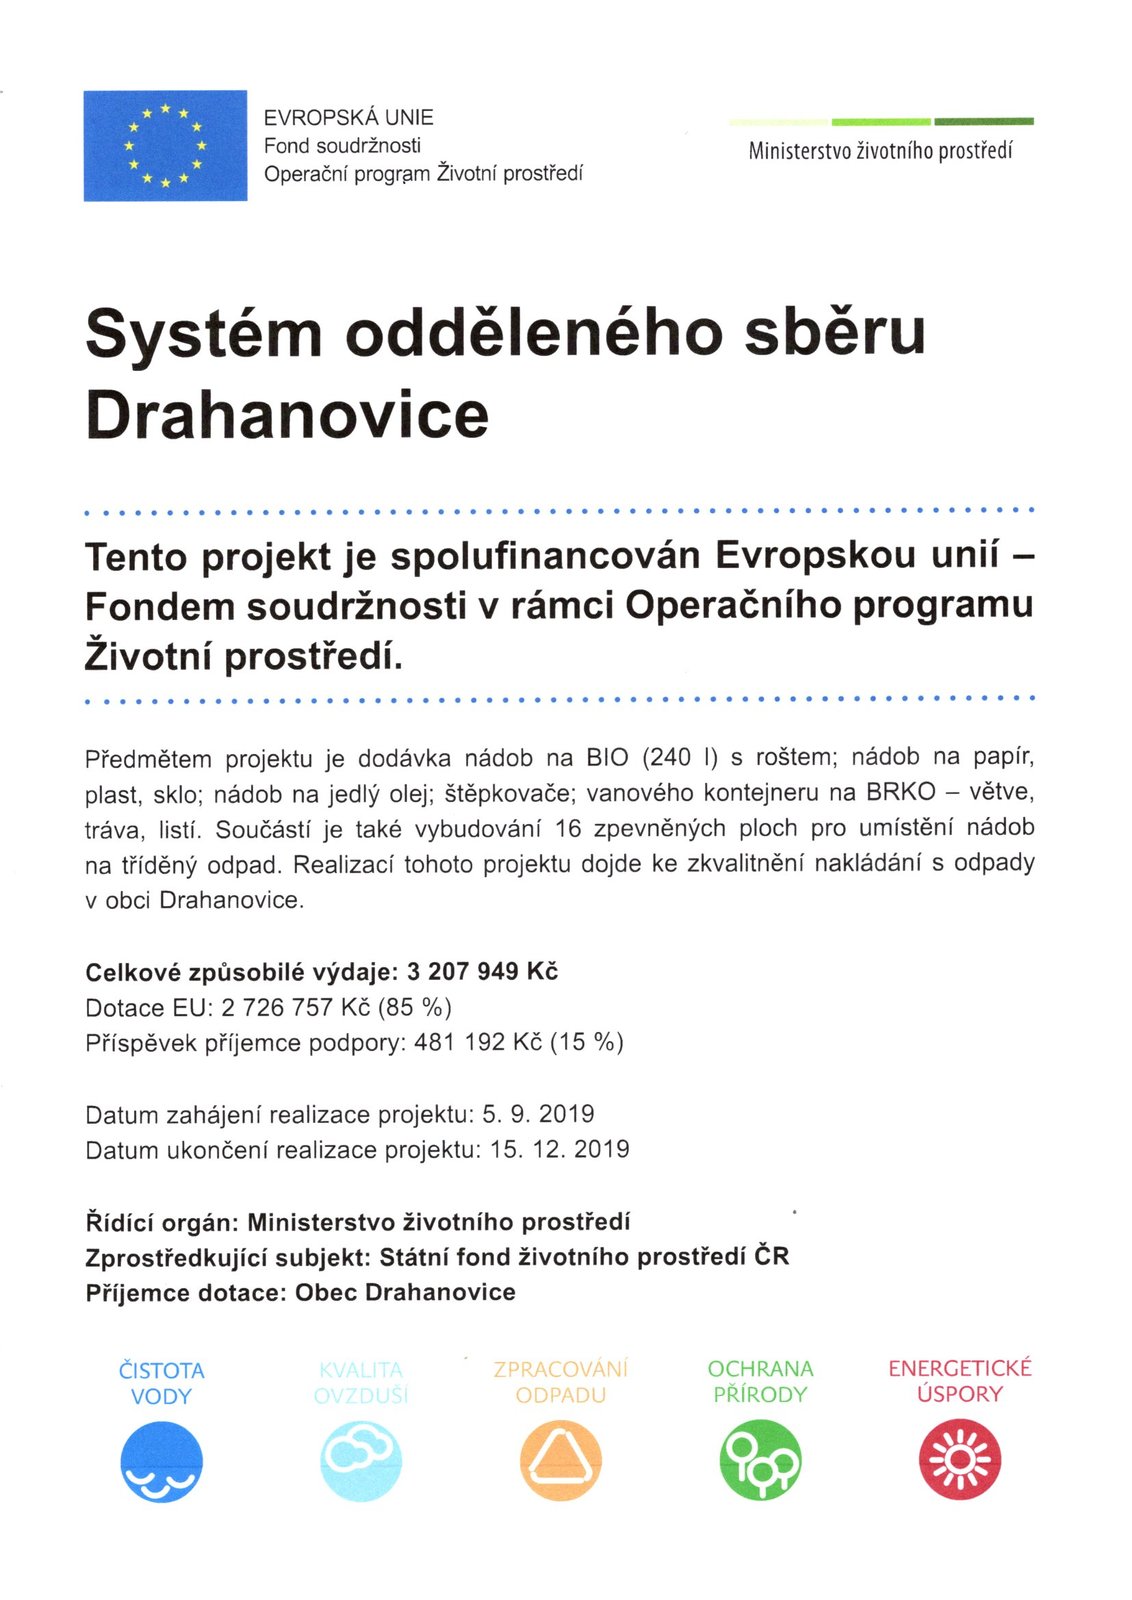 Systém odděleného sběru Drahanovice